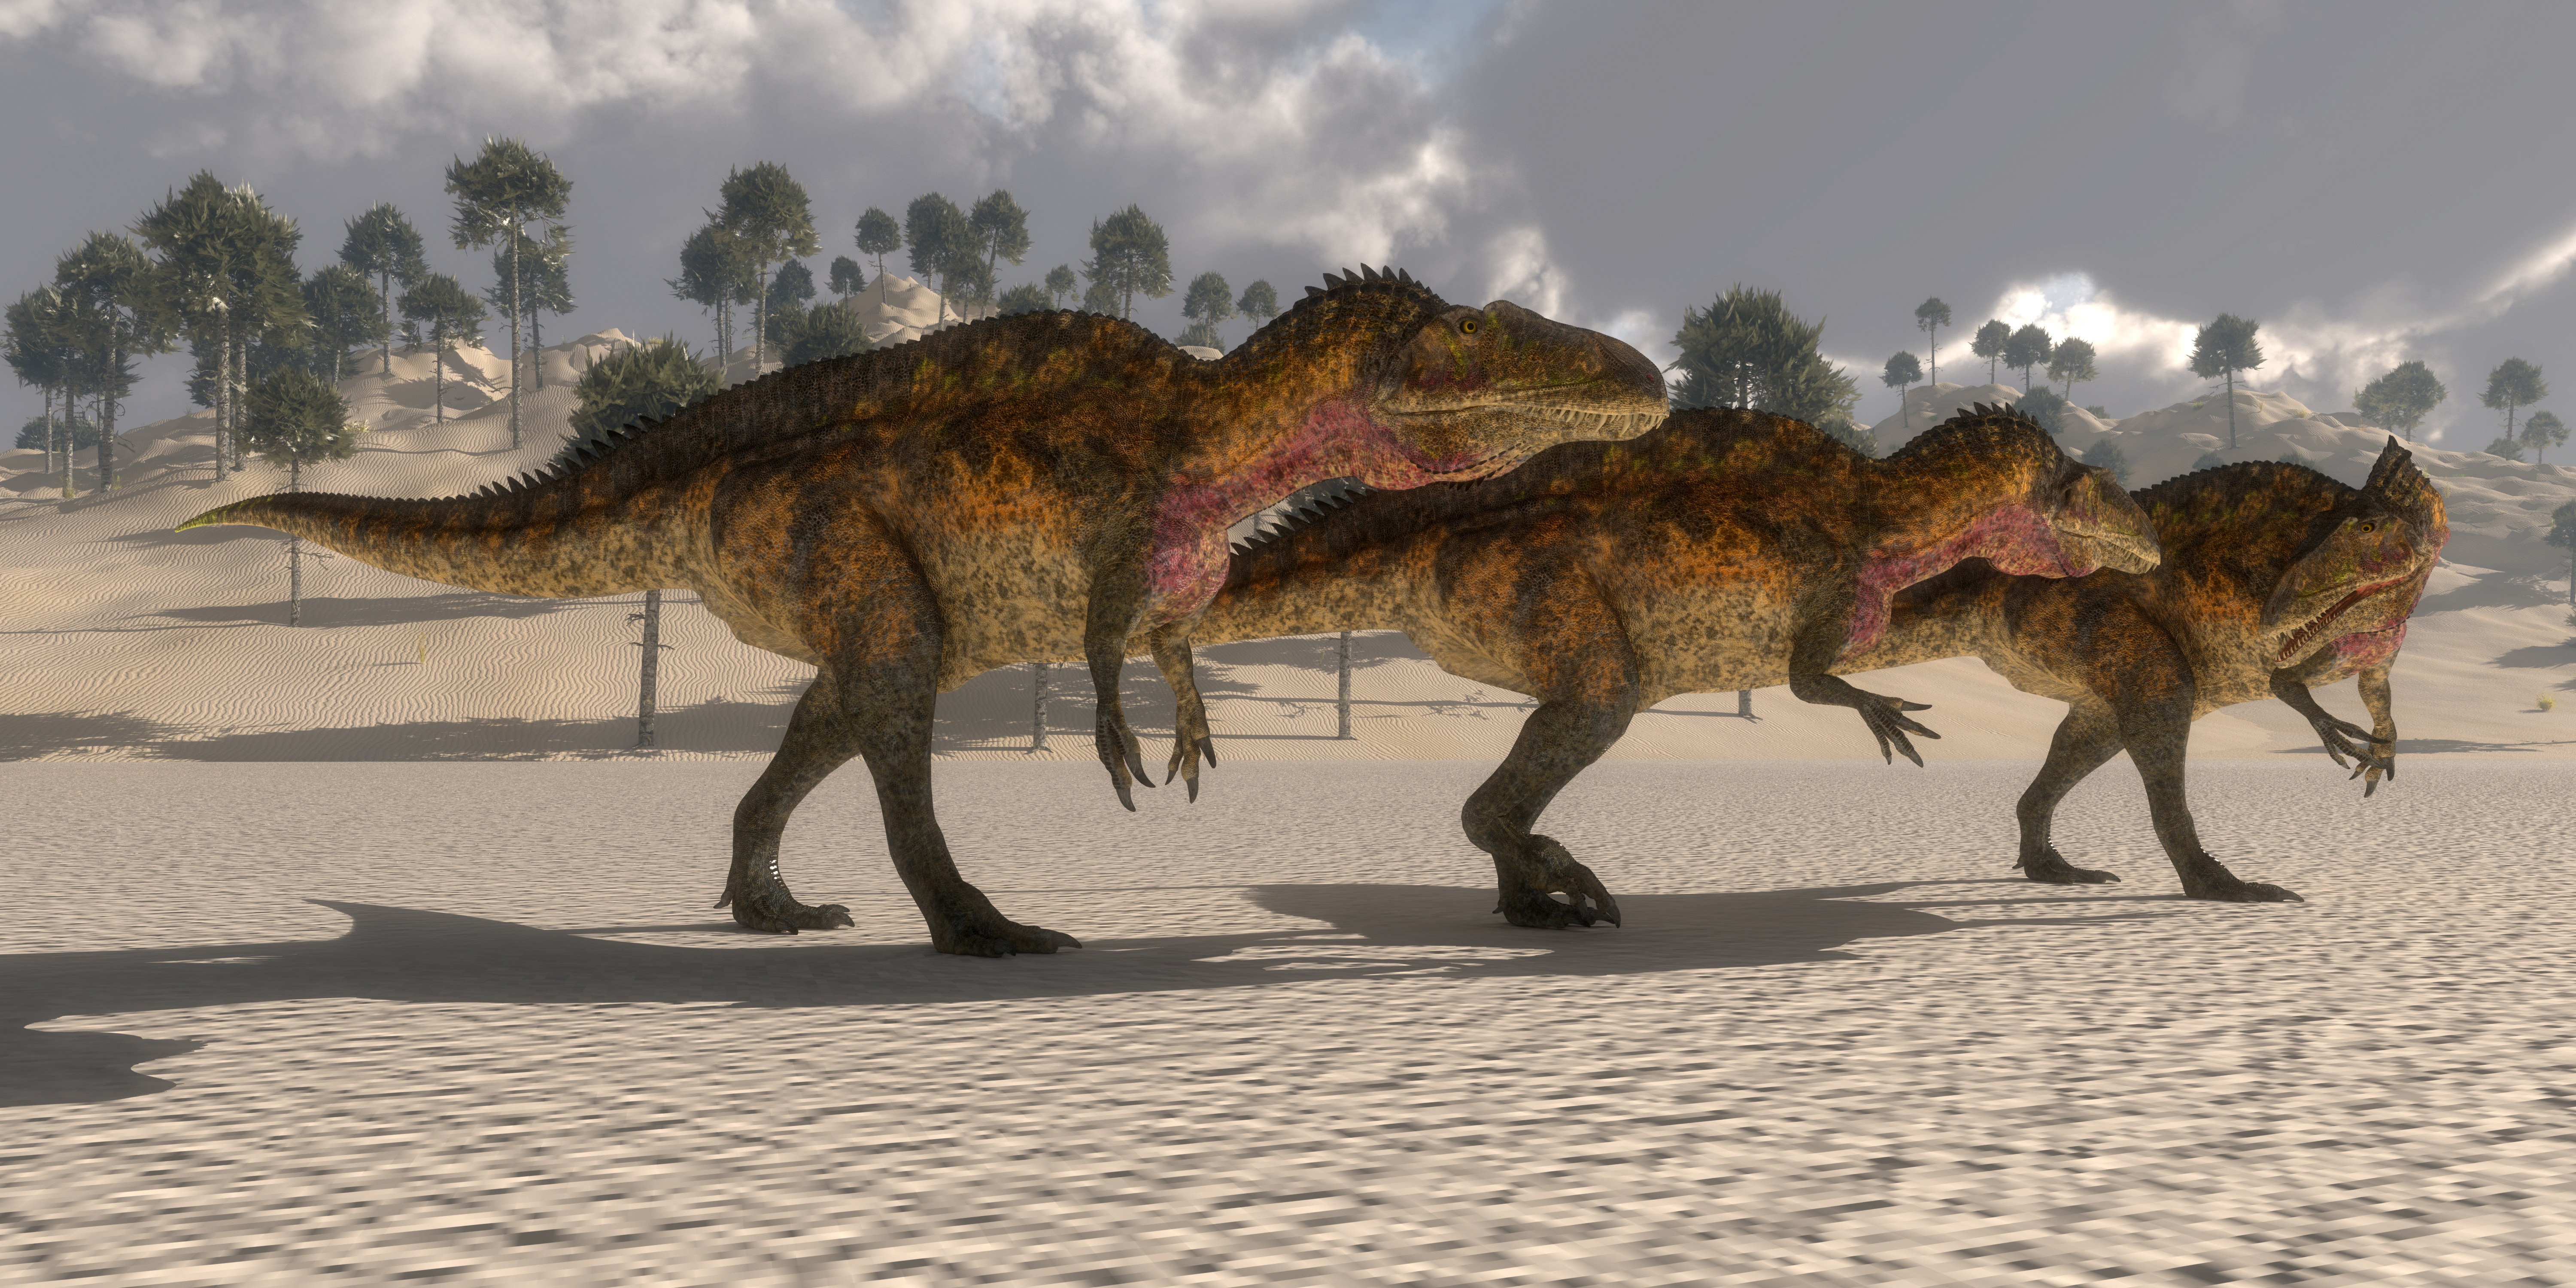 Certaines espèces de carcharodontosaures (ici selon une vue d'artiste) rivalisaient en taille avec des tyrannosauridés et des spinosauridés. © Catmando, Adobe Stock